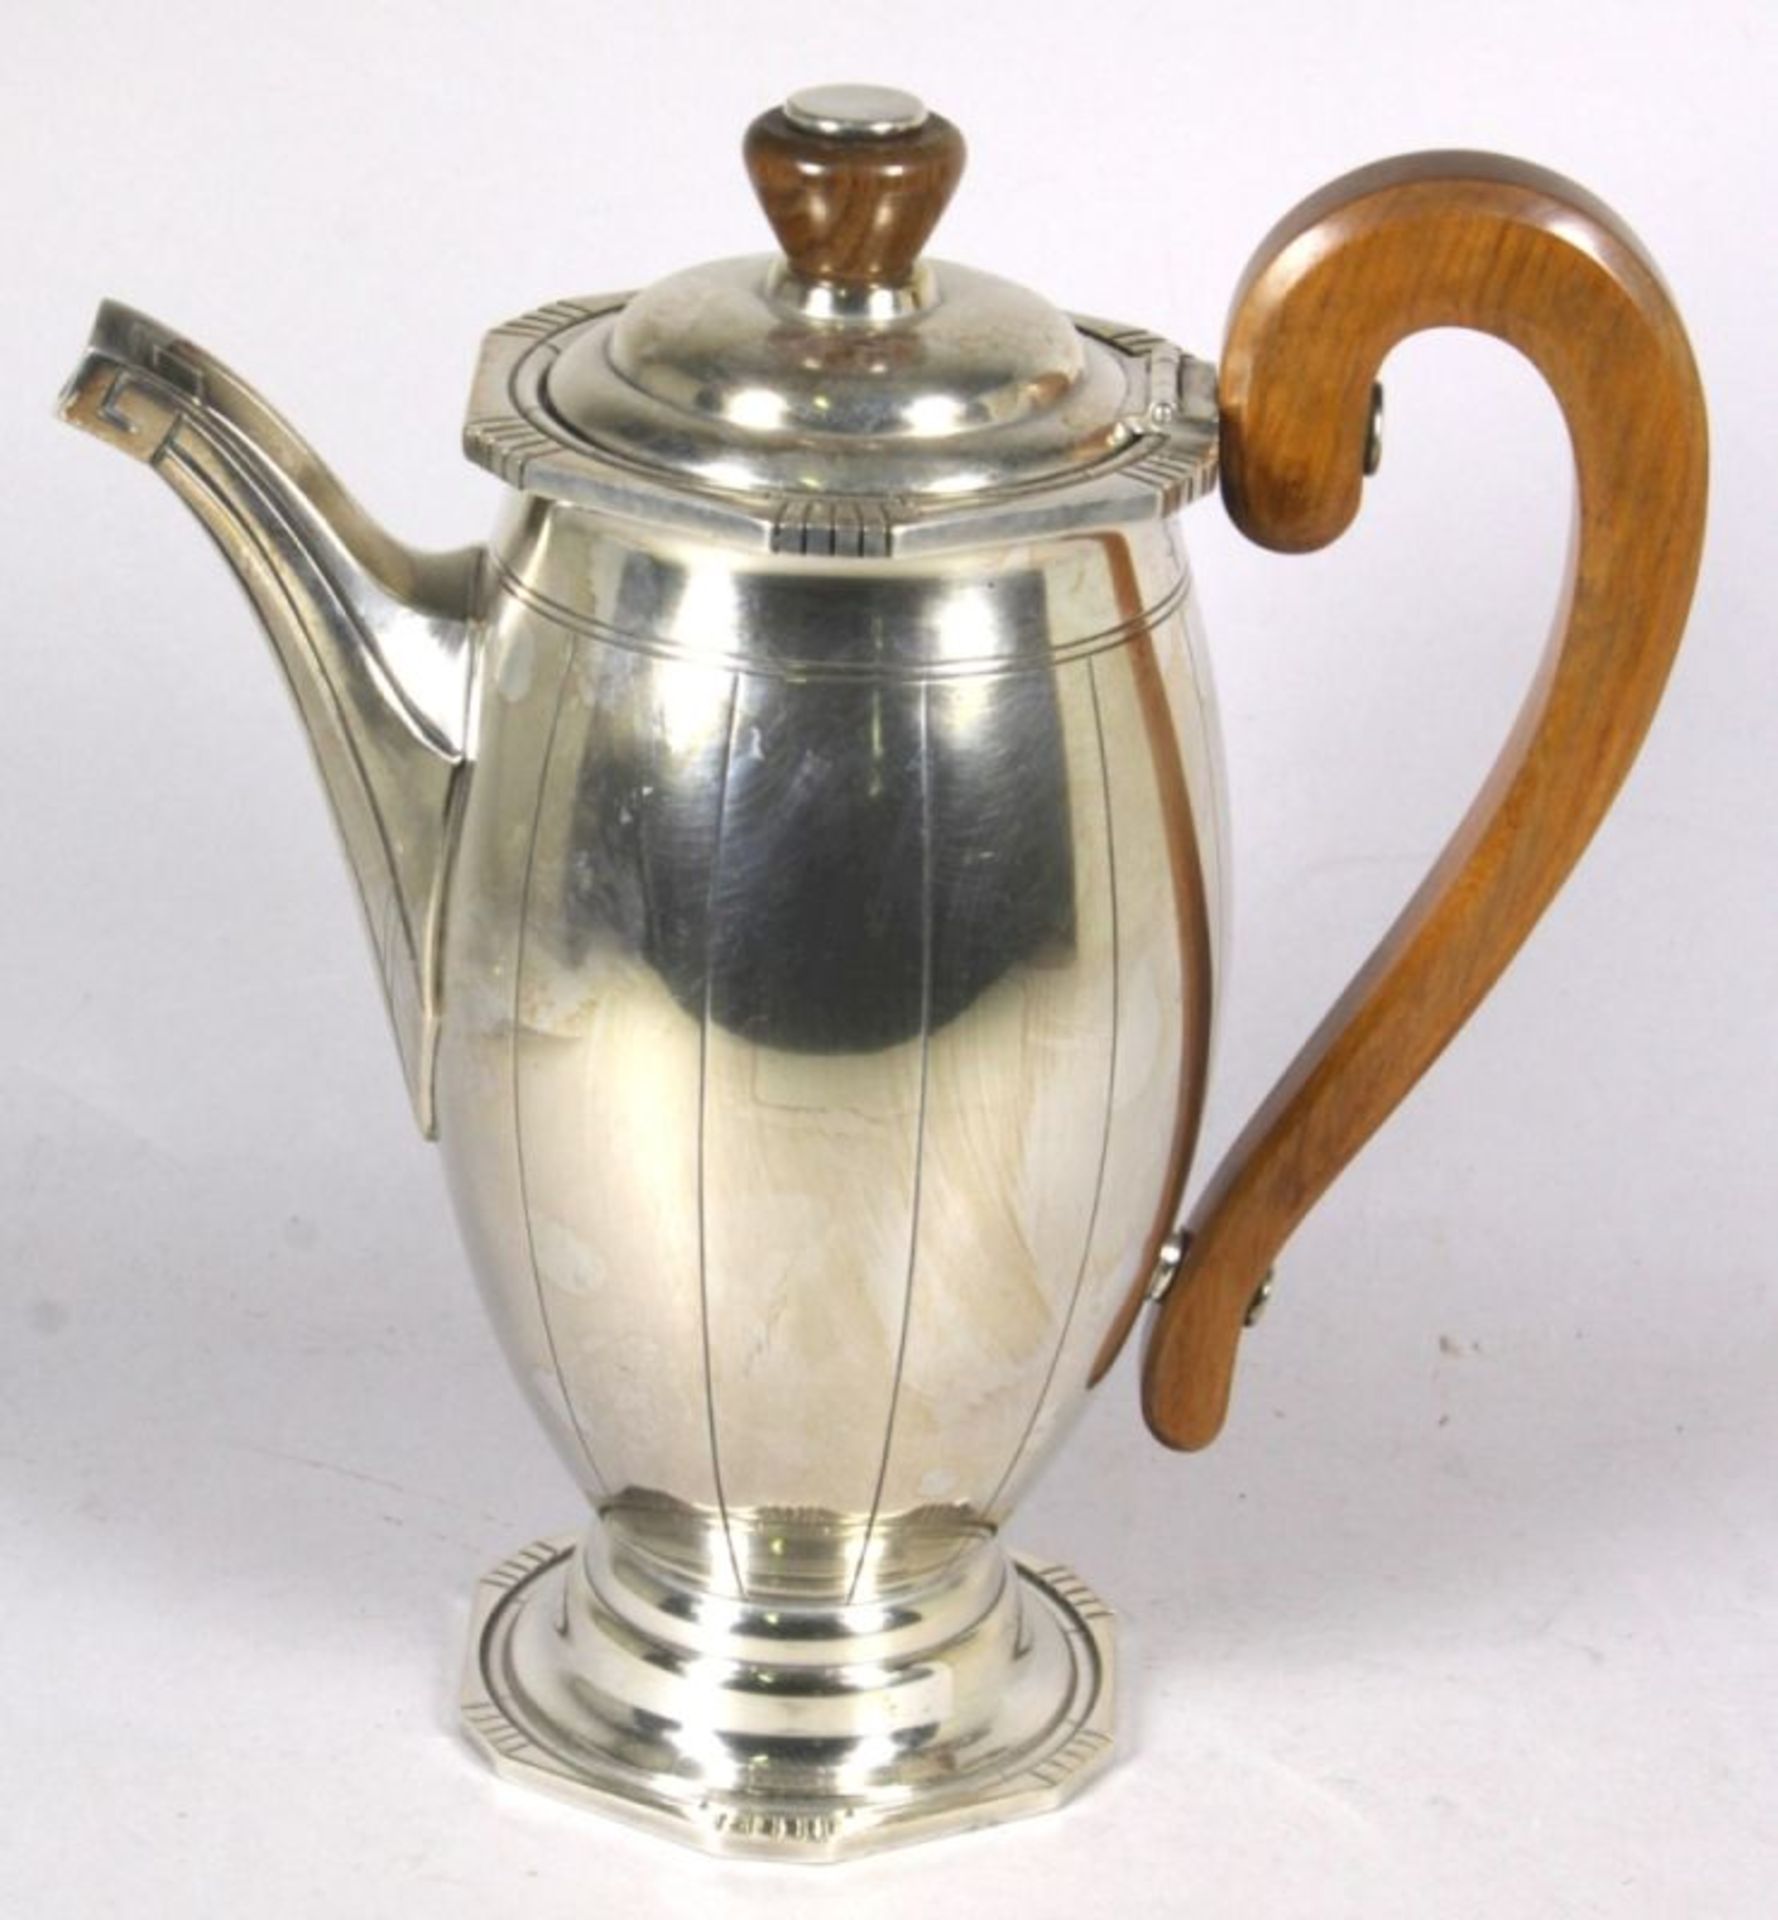 Art Déco Metall-Kaffee-/Teeset, 5-tlg., Frankreich, gepunzt D. R. und Hahn, um 1920,versilbert, - Bild 2 aus 3